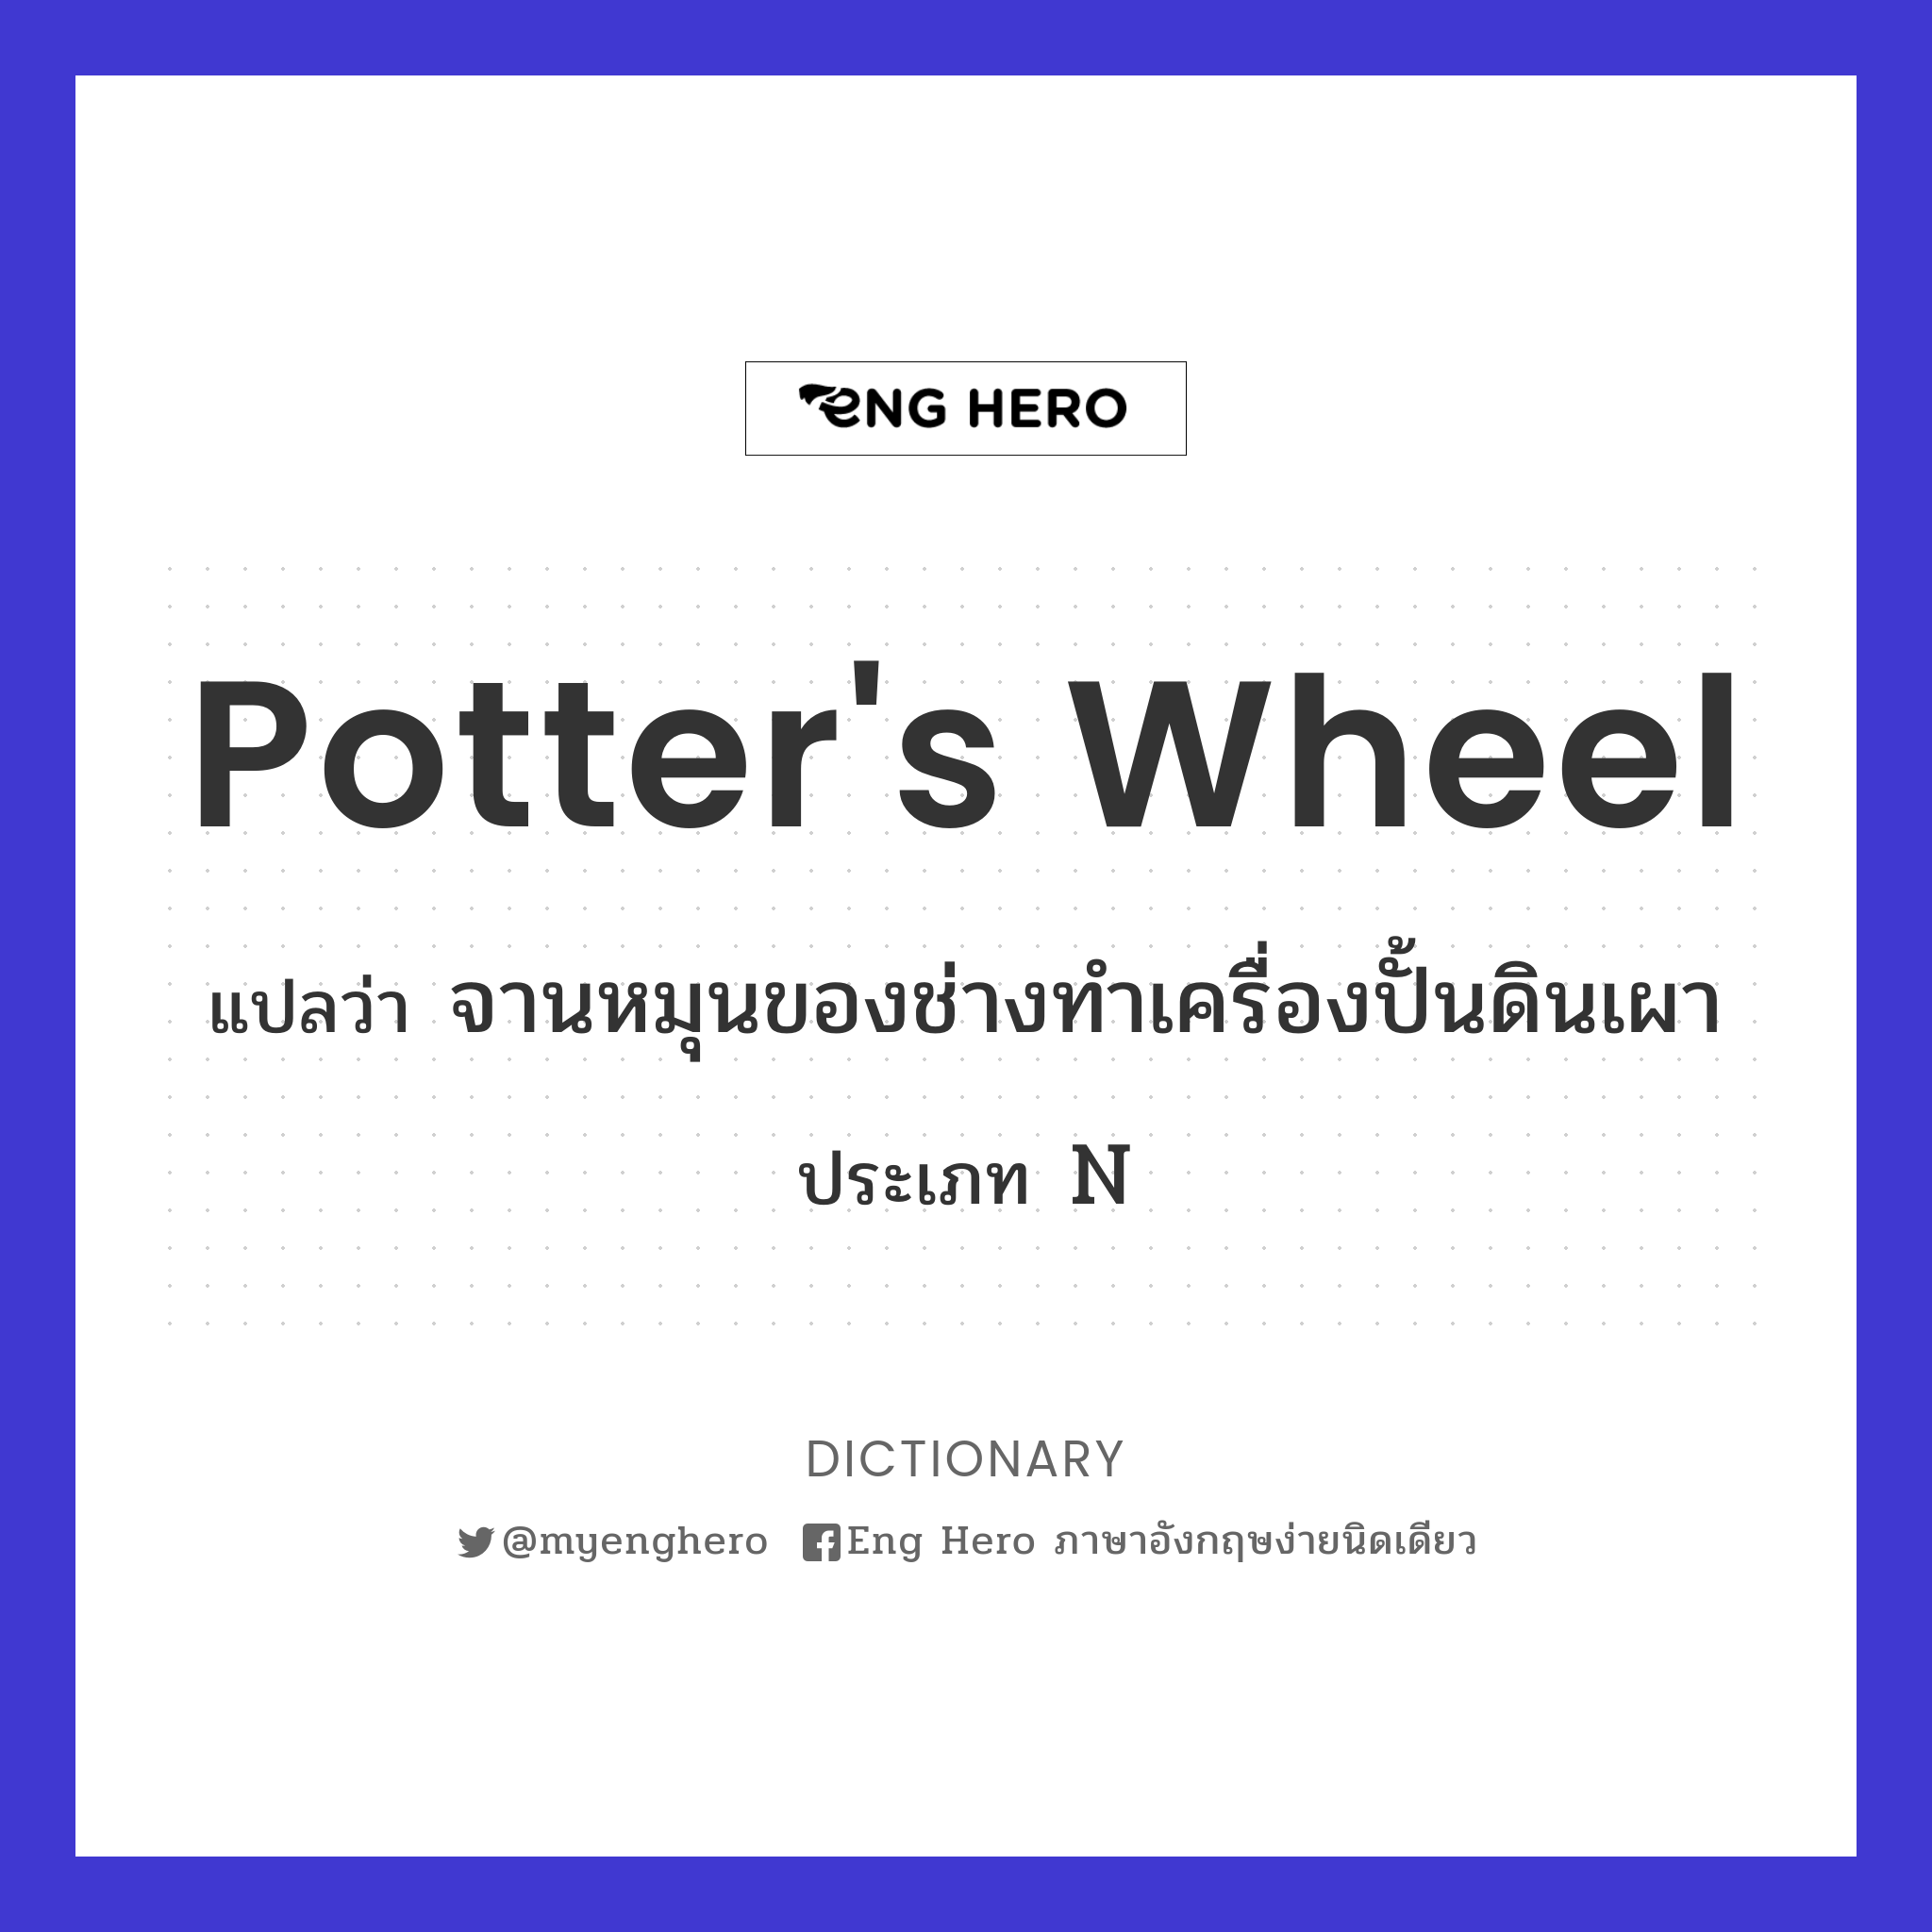 potter's wheel